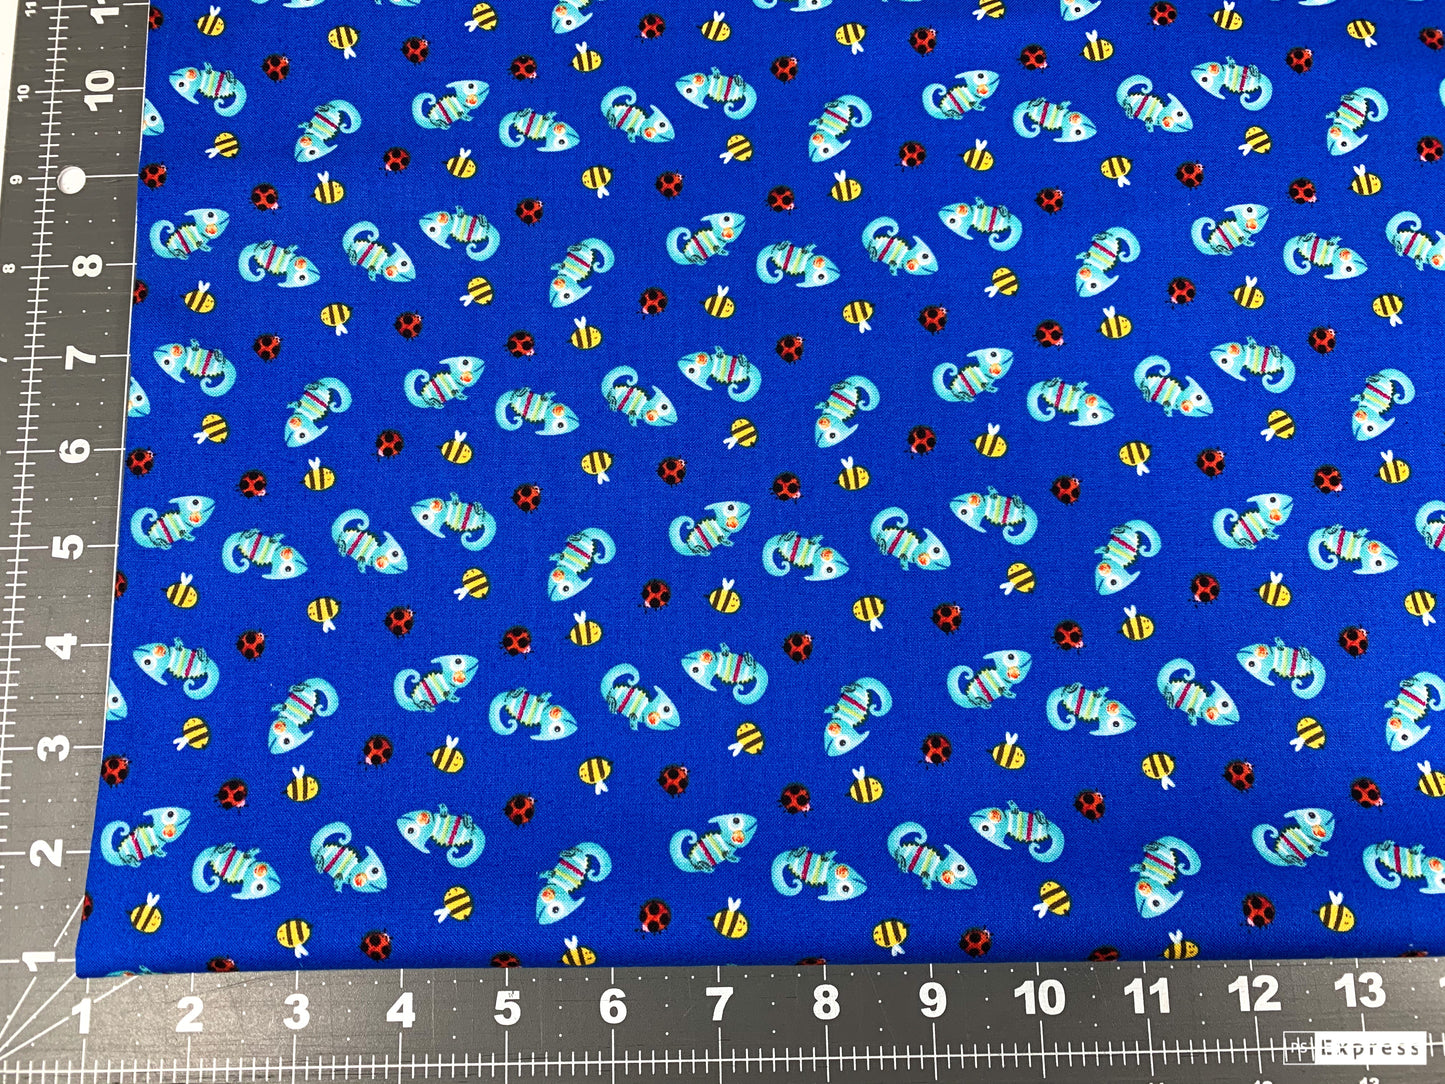 Royal Blue Chameleon fabric 9250 ladybugs bees